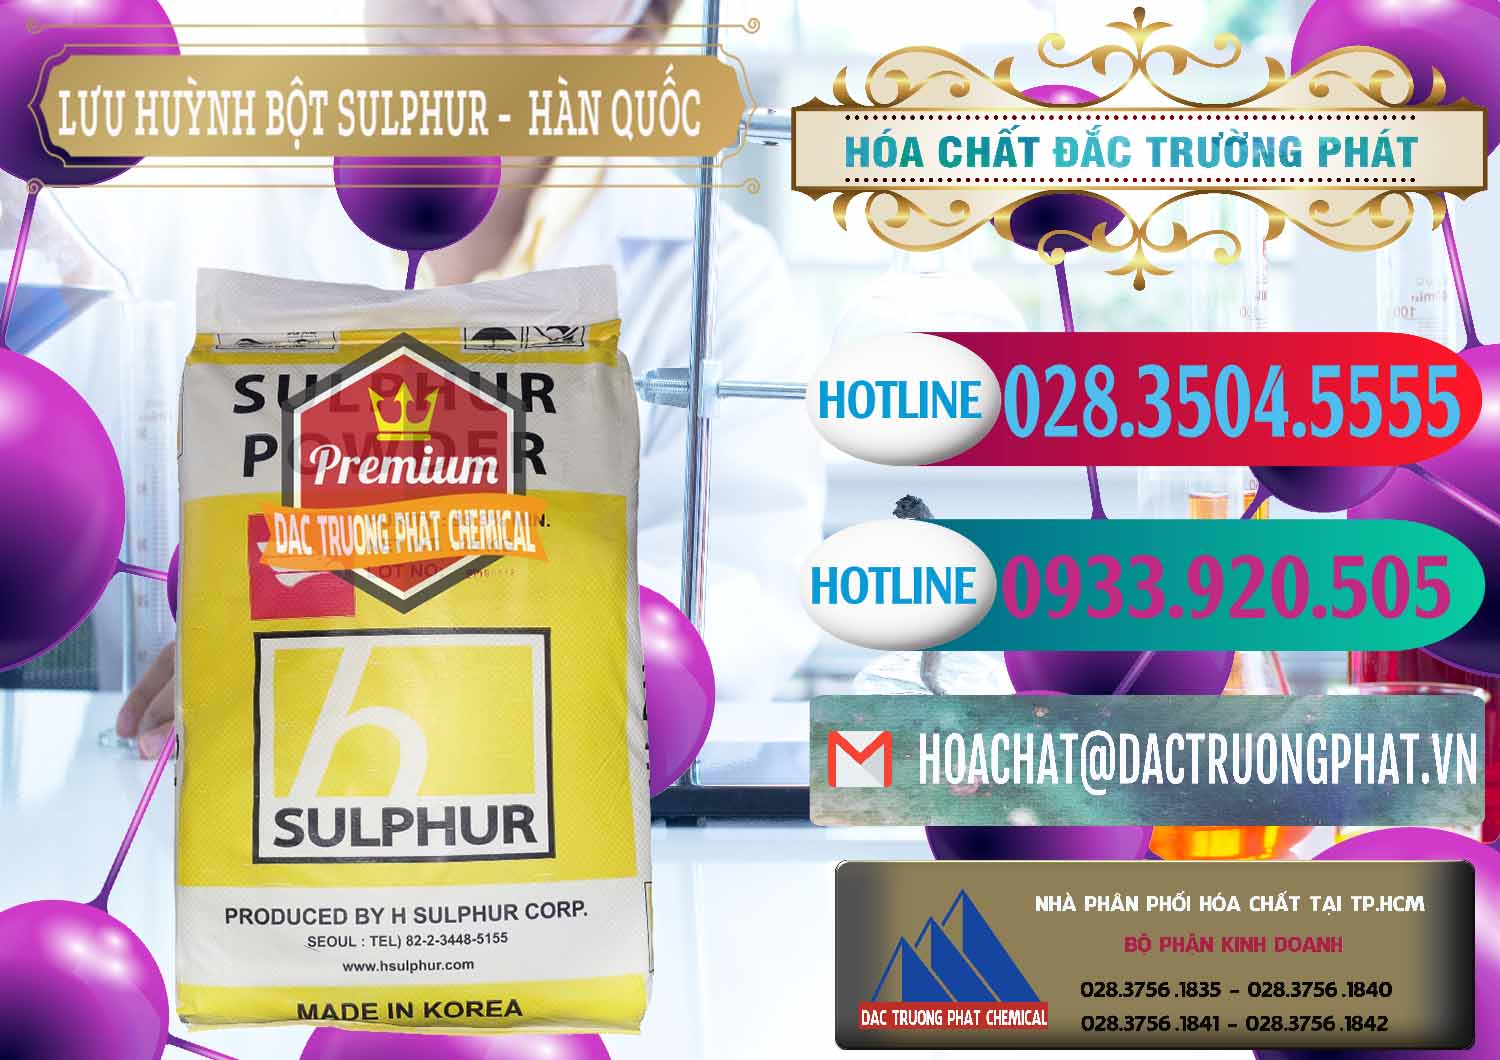 Nơi bán và cung cấp Lưu huỳnh Bột - Sulfur Powder ( H Sulfur ) Hàn Quốc Korea - 0199 - Nơi bán ( phân phối ) hóa chất tại TP.HCM - truongphat.vn